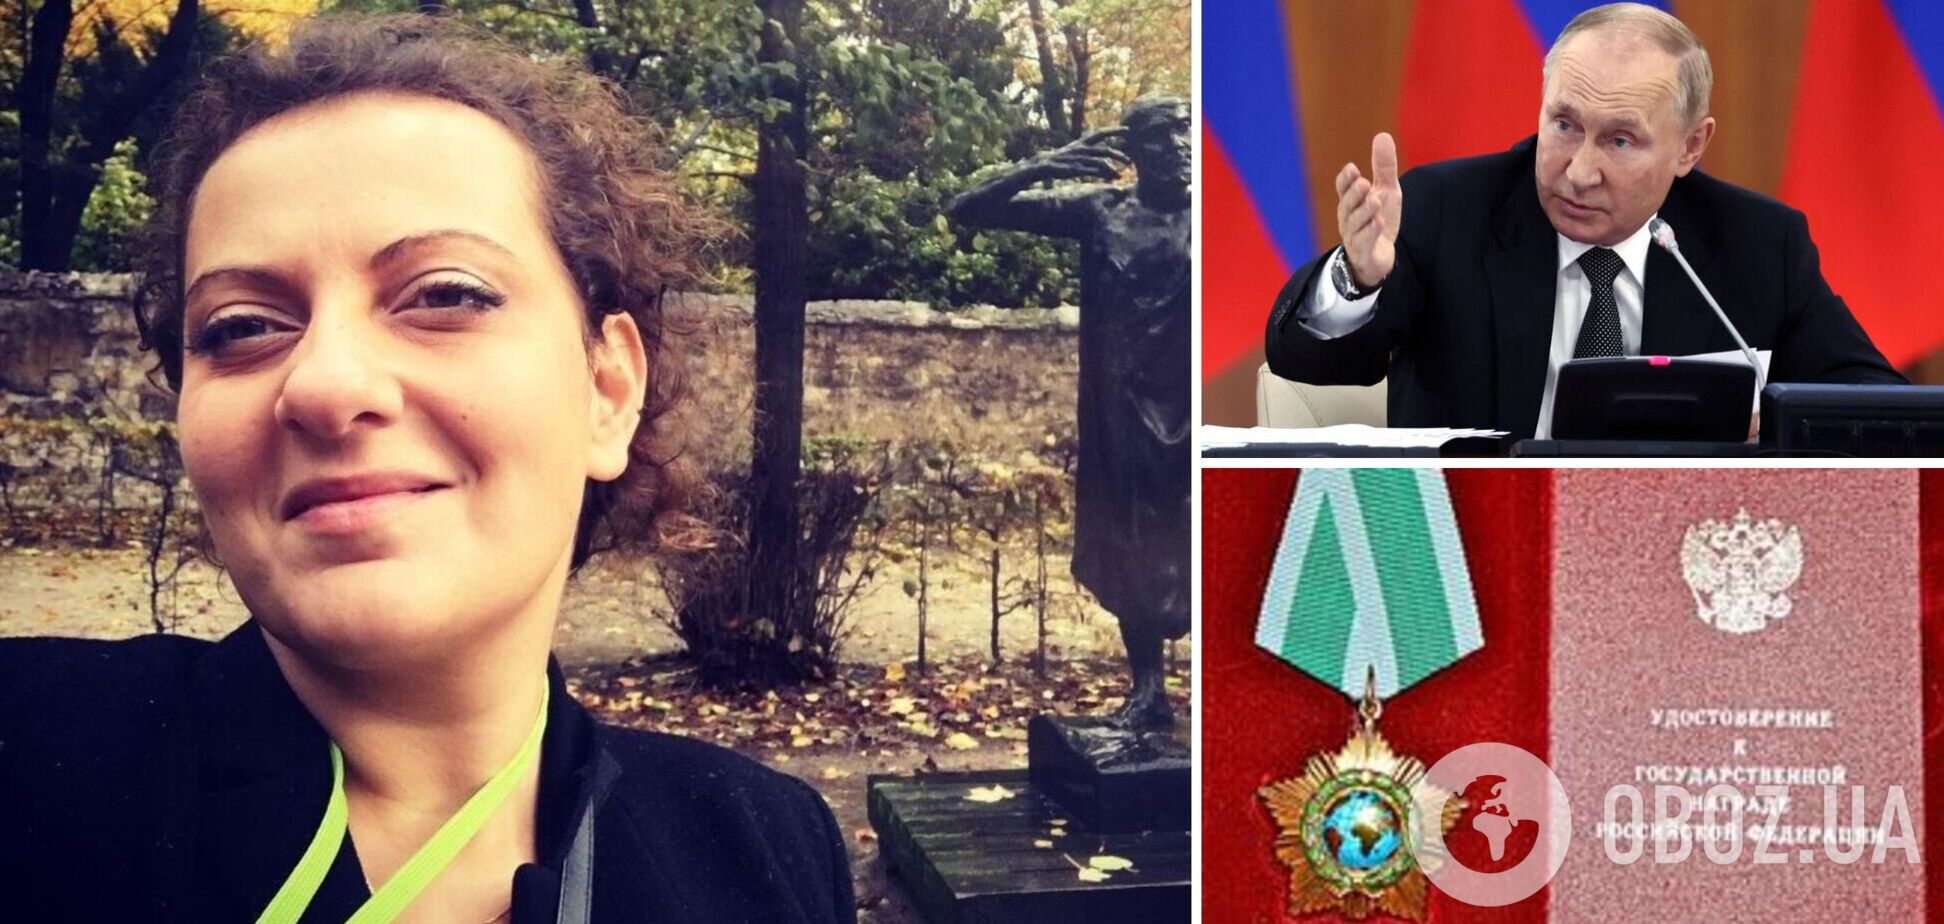 Путин наградил орденом дружбы сестру пропагандистки Симоньян